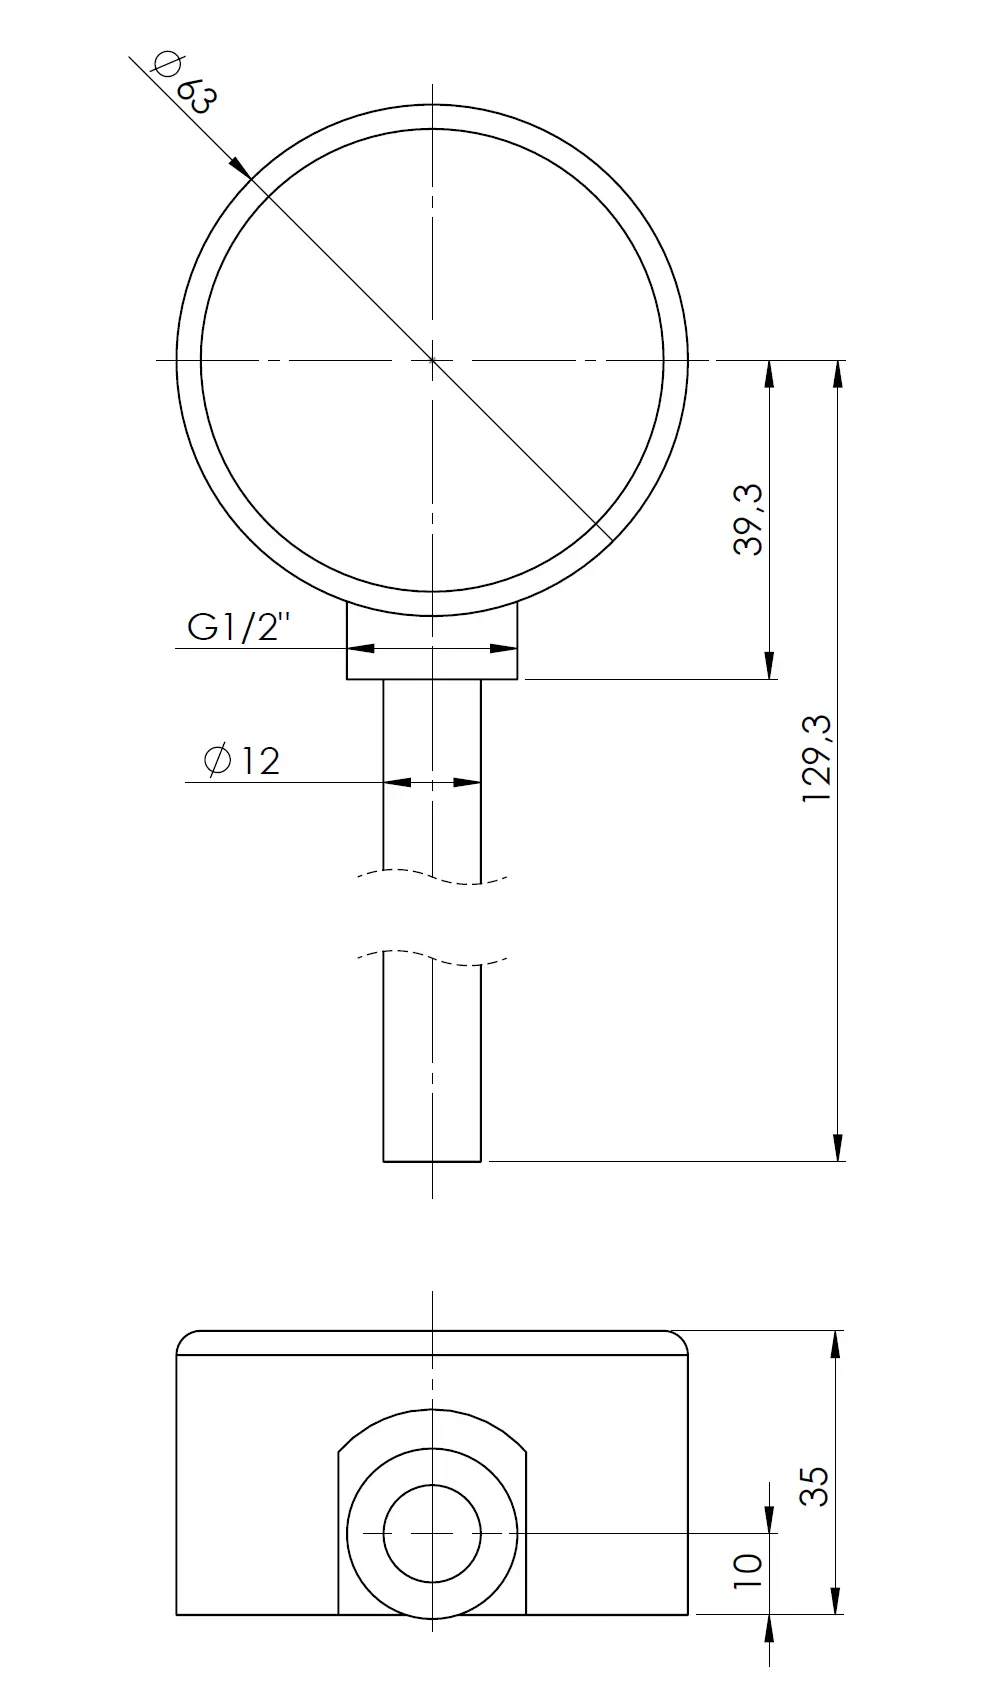 Termometr bimetaliczny BiTh 63, fi63 mm, -20÷60°C, L 100 mm, G1/2", rad, kl. 2 - budowa